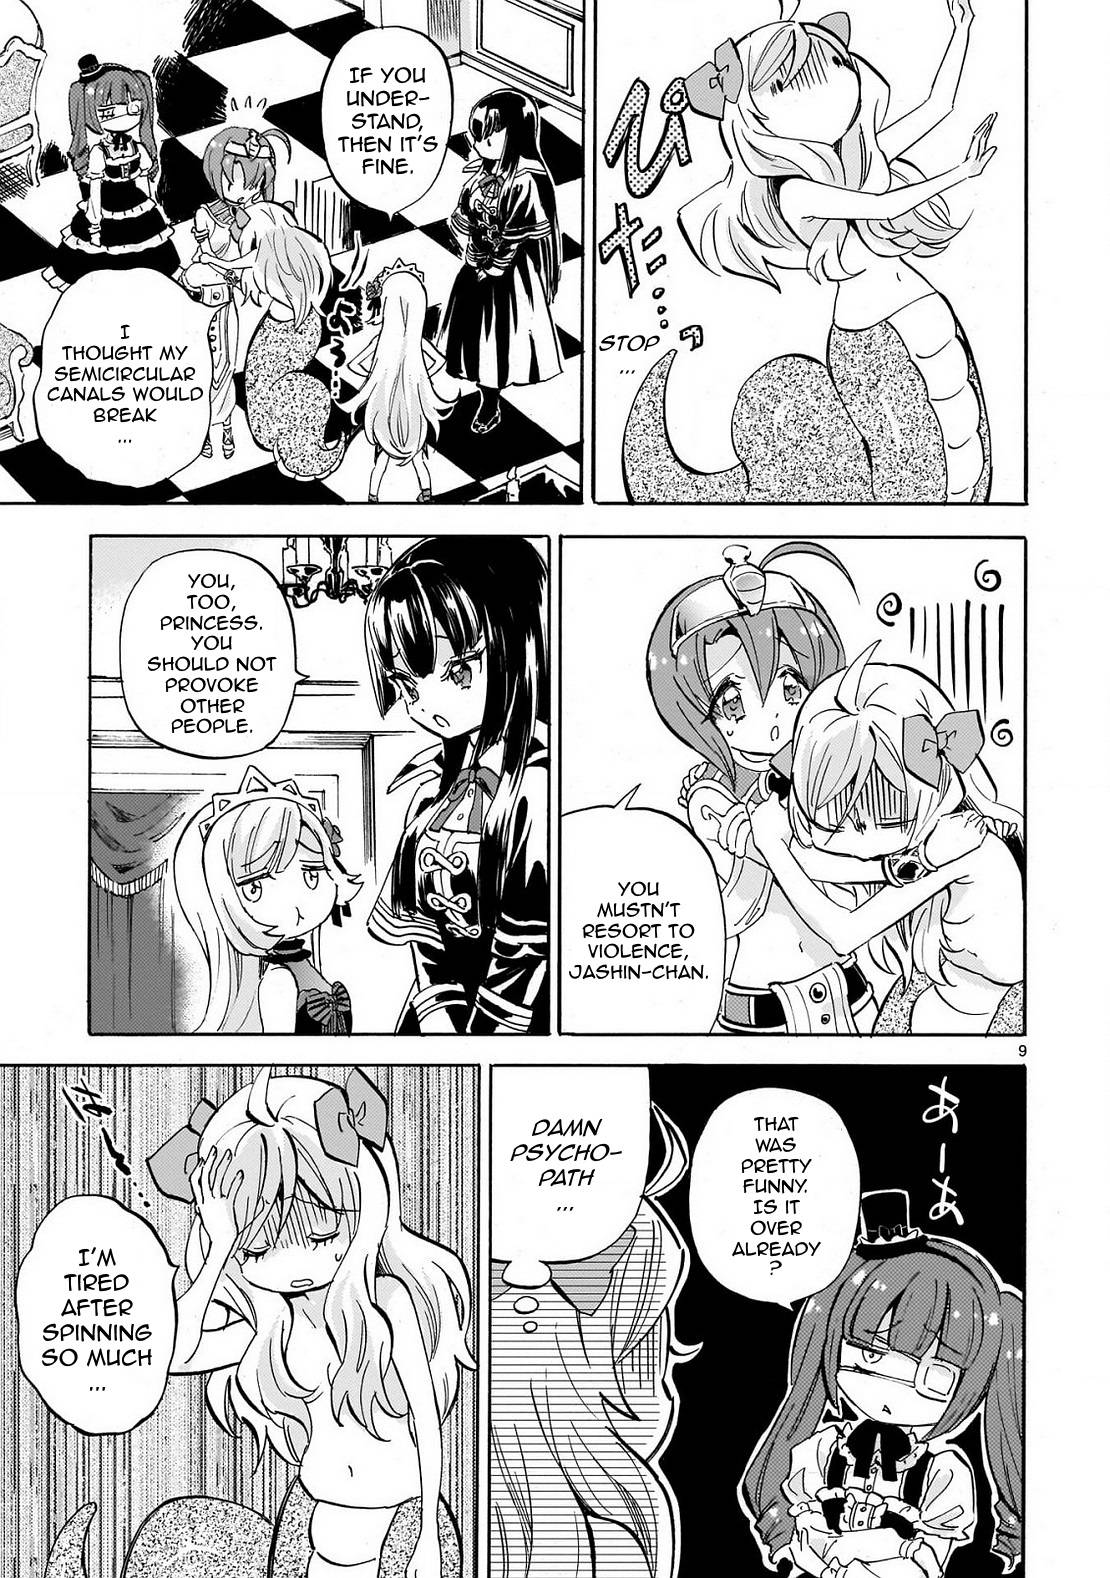 Jashin-chan Dropkick chapter 231 page 9